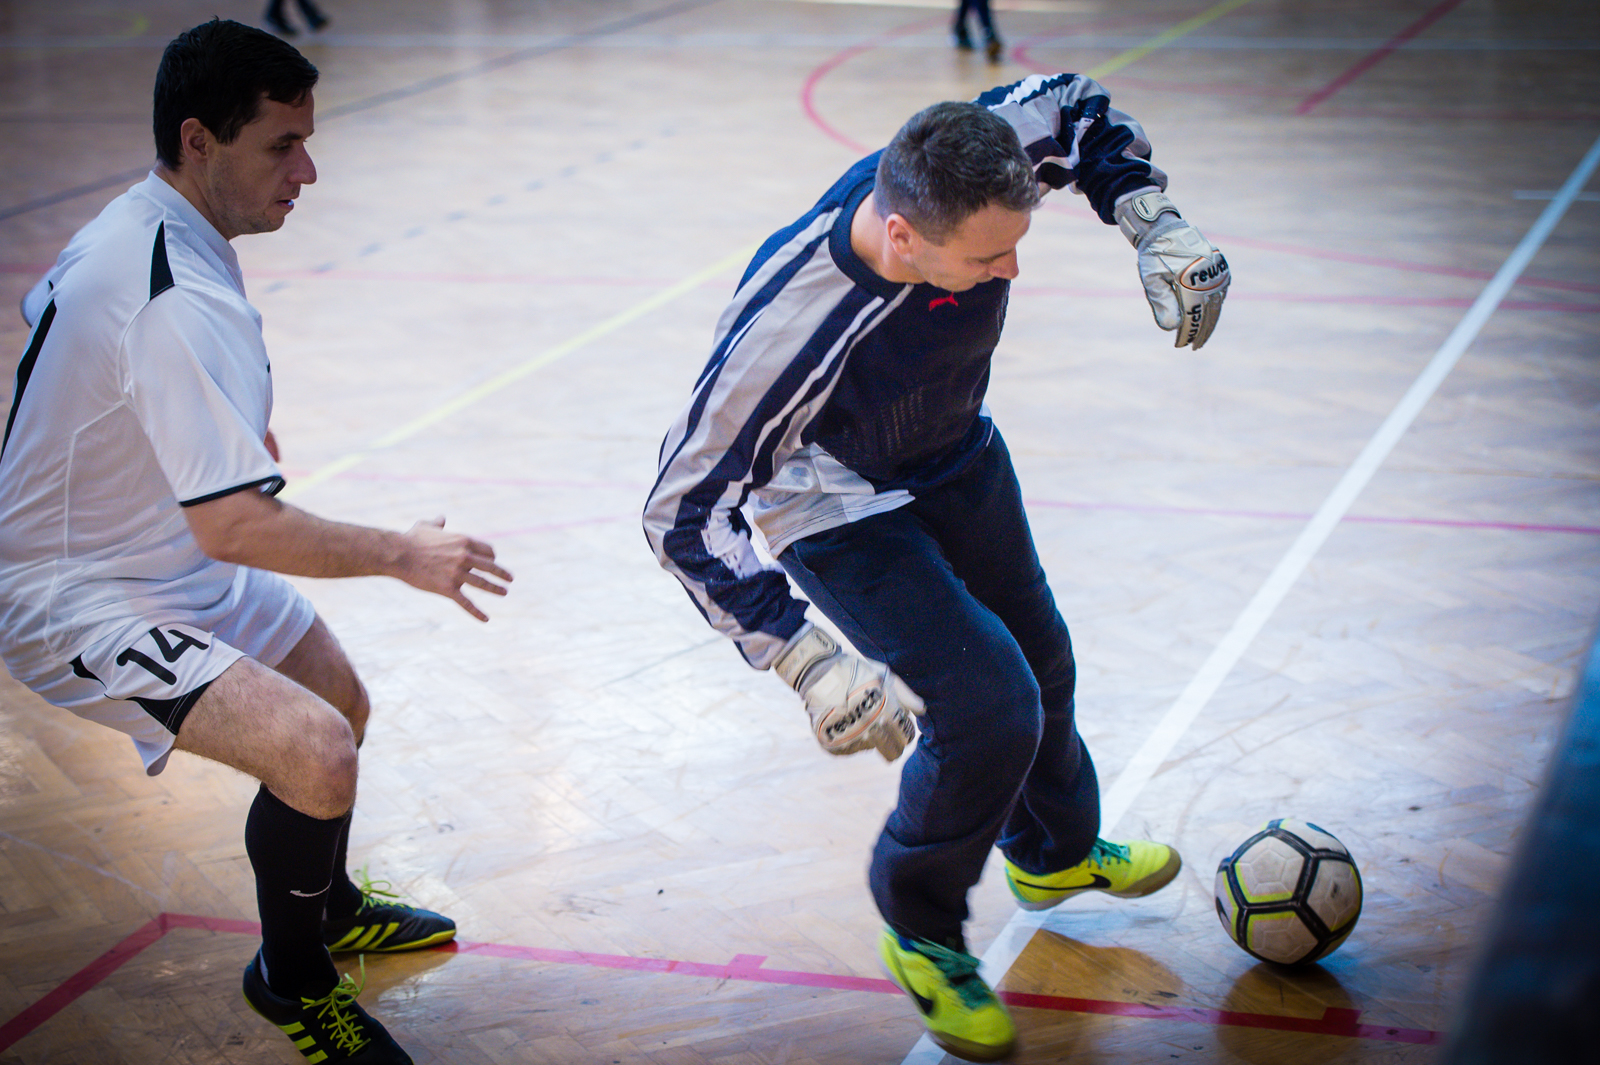 Fehérvári Futballfesztivál a VOK-ban